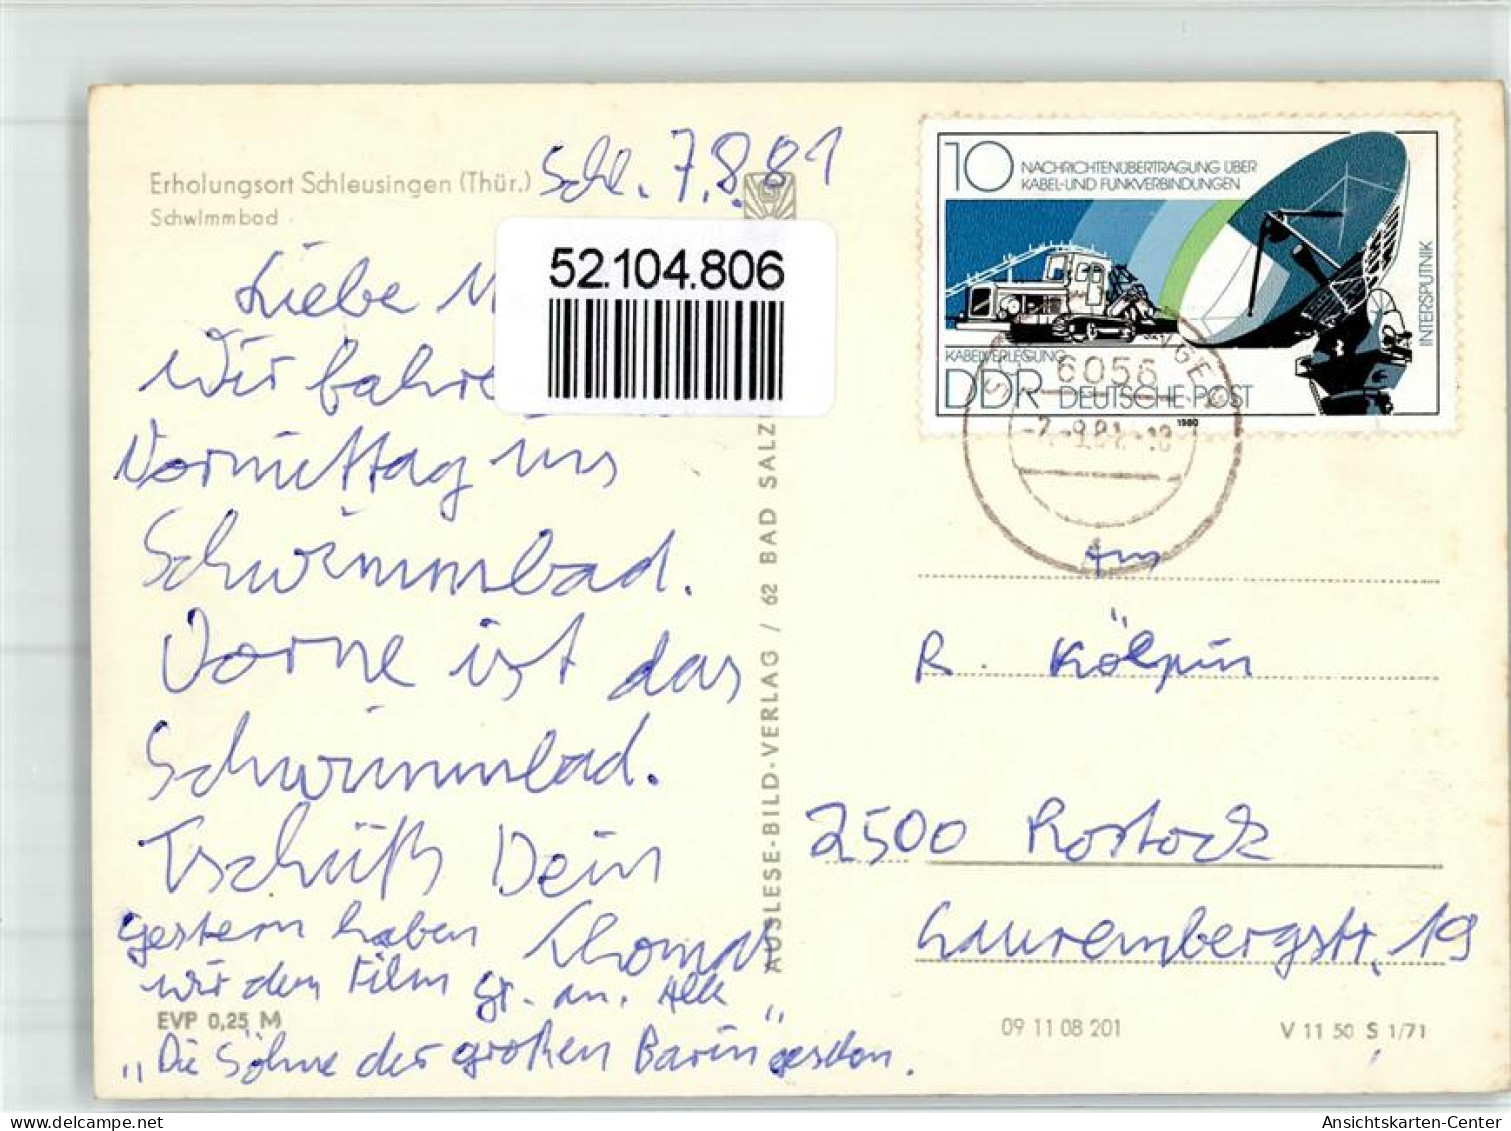 52104806 - Schleusingen - Schleusingen